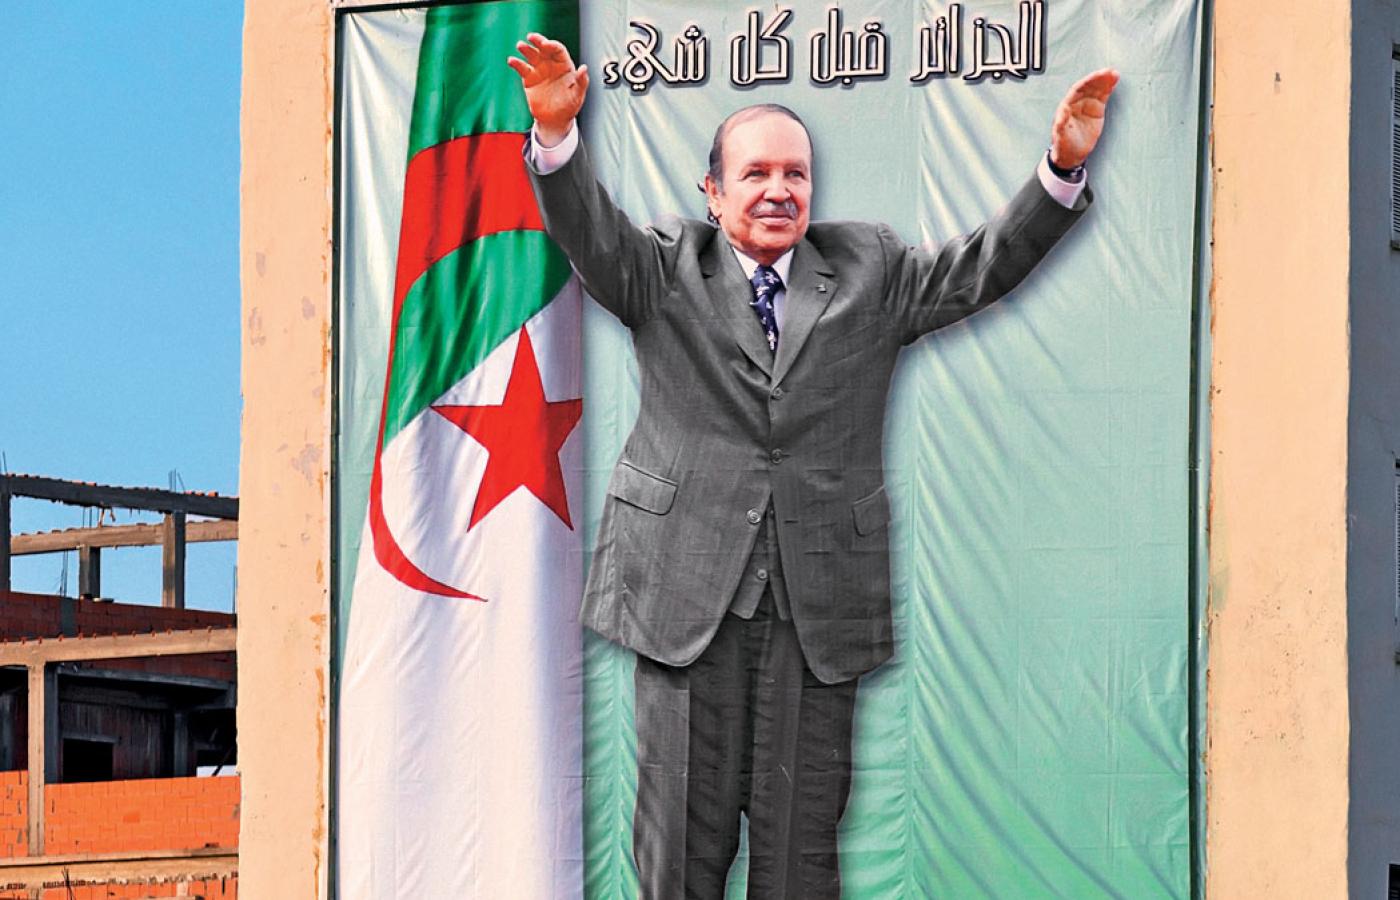 Prezydent Abdelaziz Buteflika na banerze w Ghardai. W czasie kampanii wyborczej był kandydatem widmo, teraz też go praktycznie nie widać.